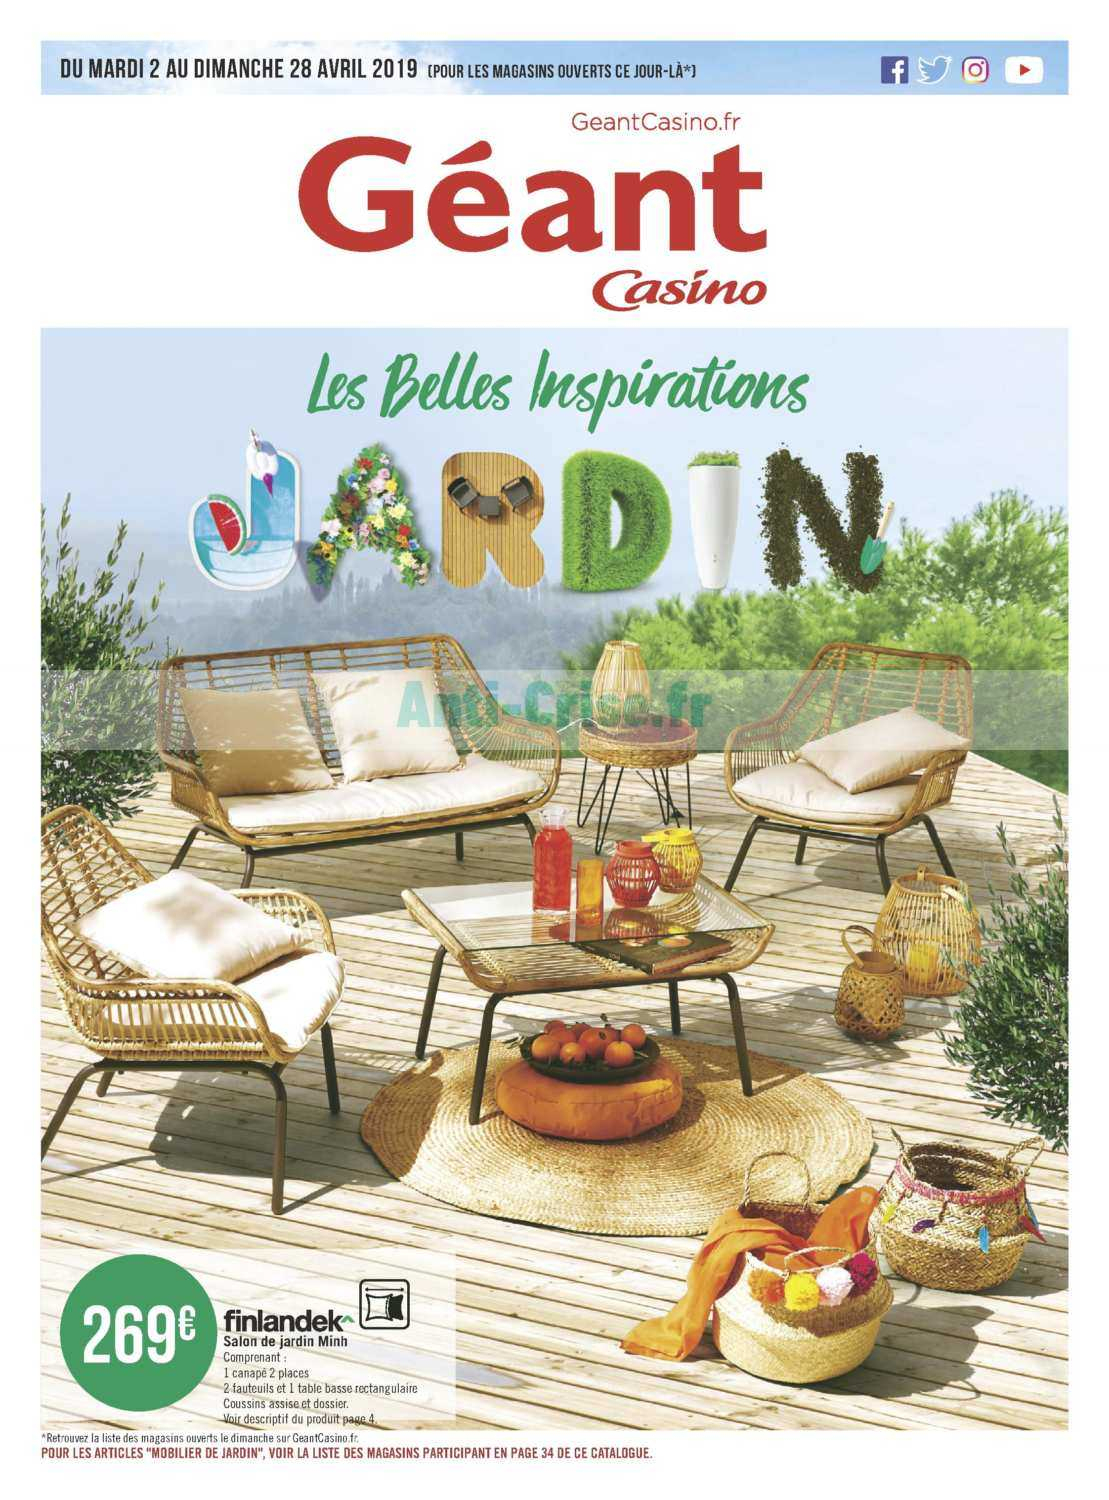 Salon De Jardin Geant Casino 2019 - The Best Undercut Ponytail concernant Salon De Jardin Casino